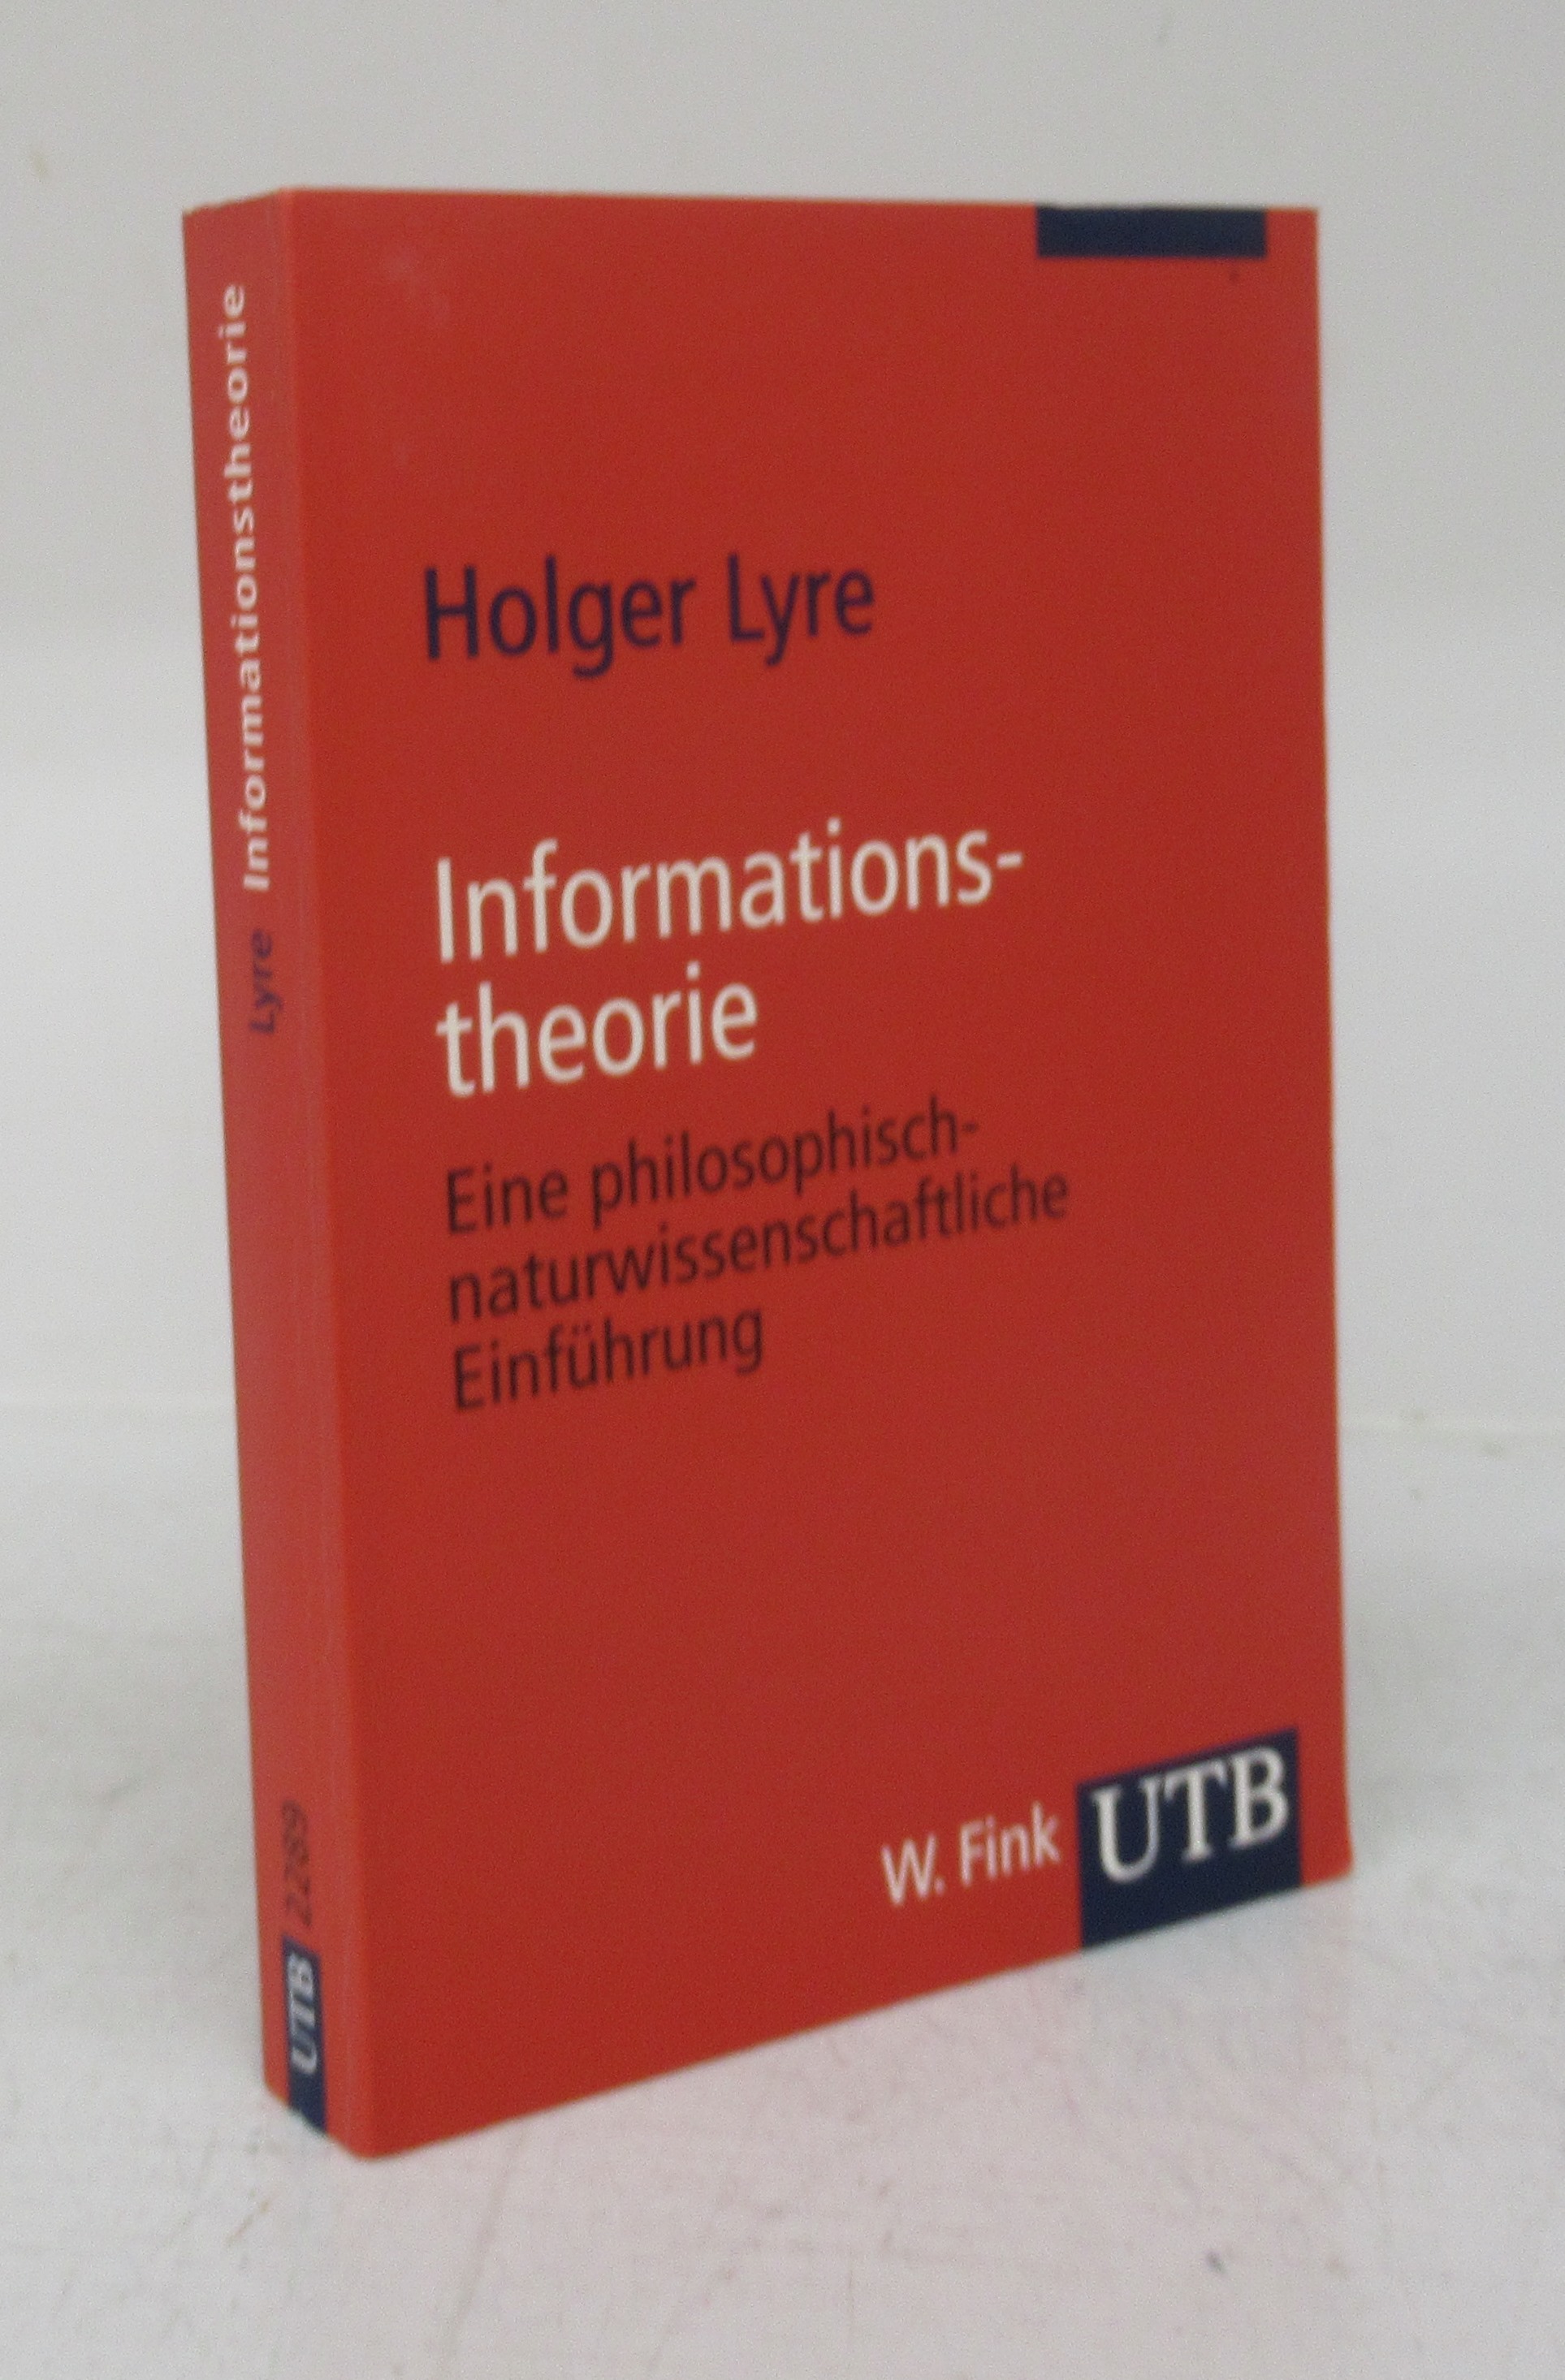 Informationstheorie: Eine philosophisch-naturwissenschaftiche Einführung - LYRE, Holger